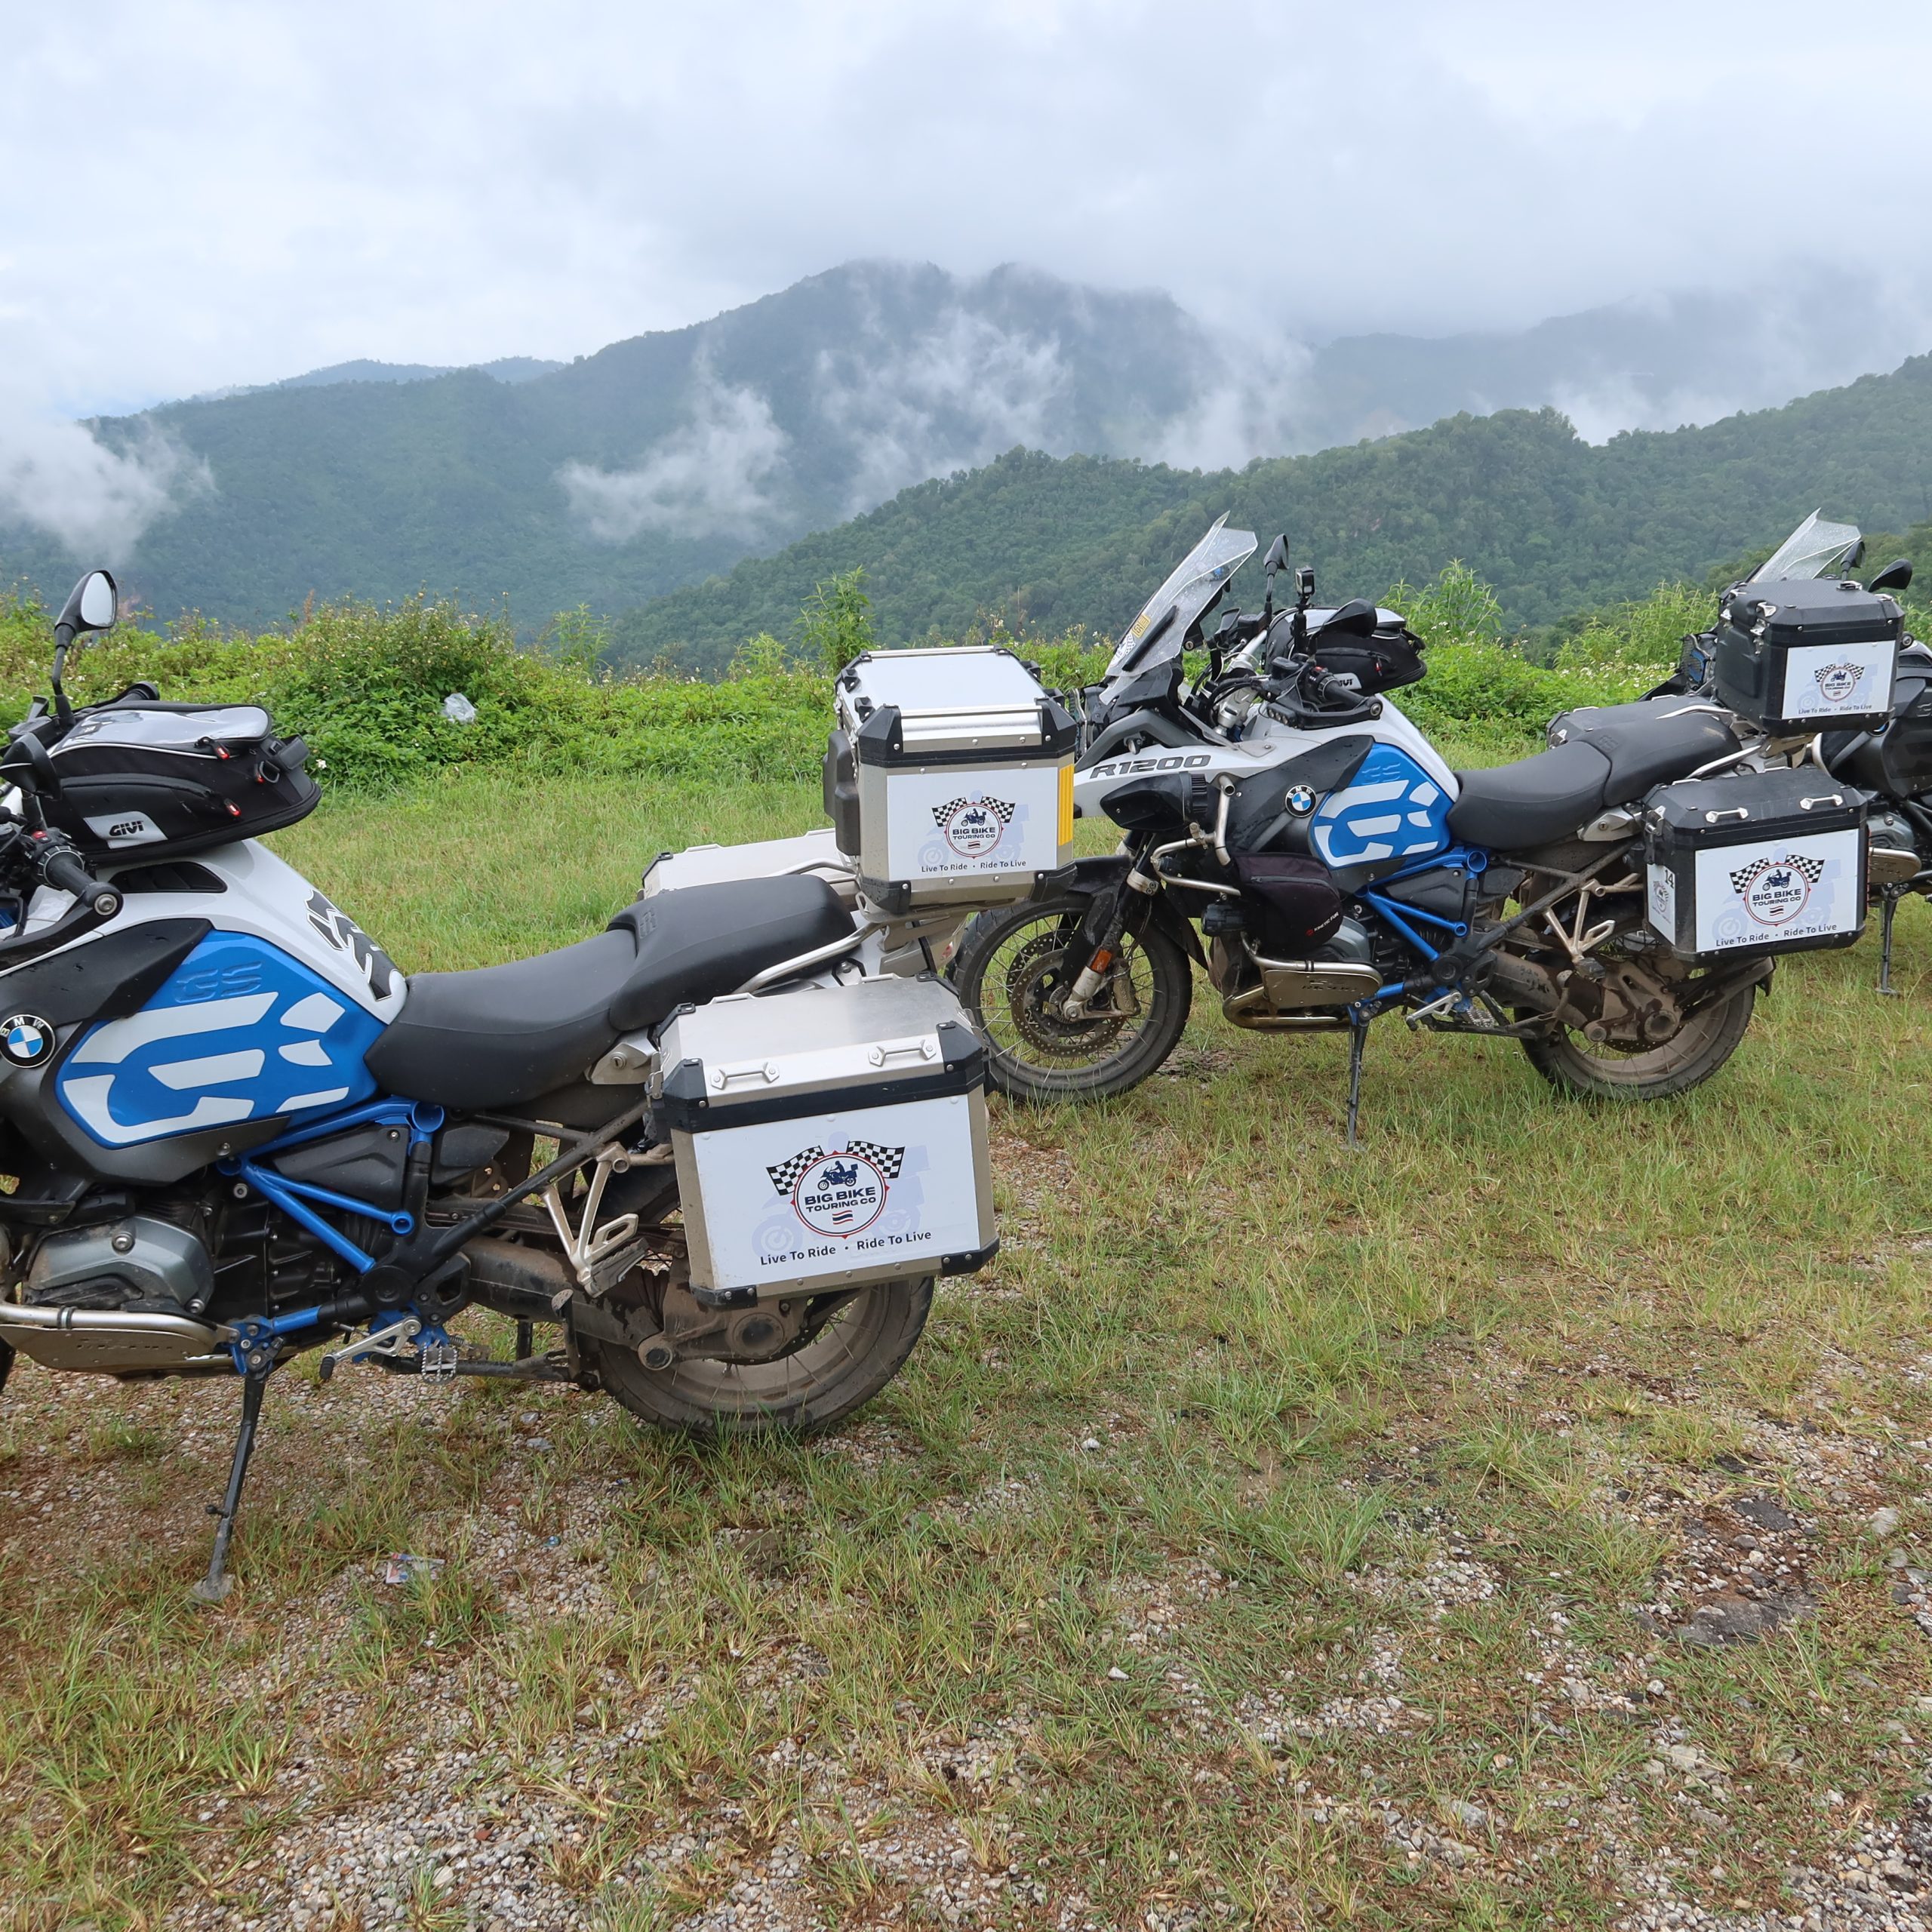 Day 1 – Chiang Mai to Mae Sariang (191 Km)